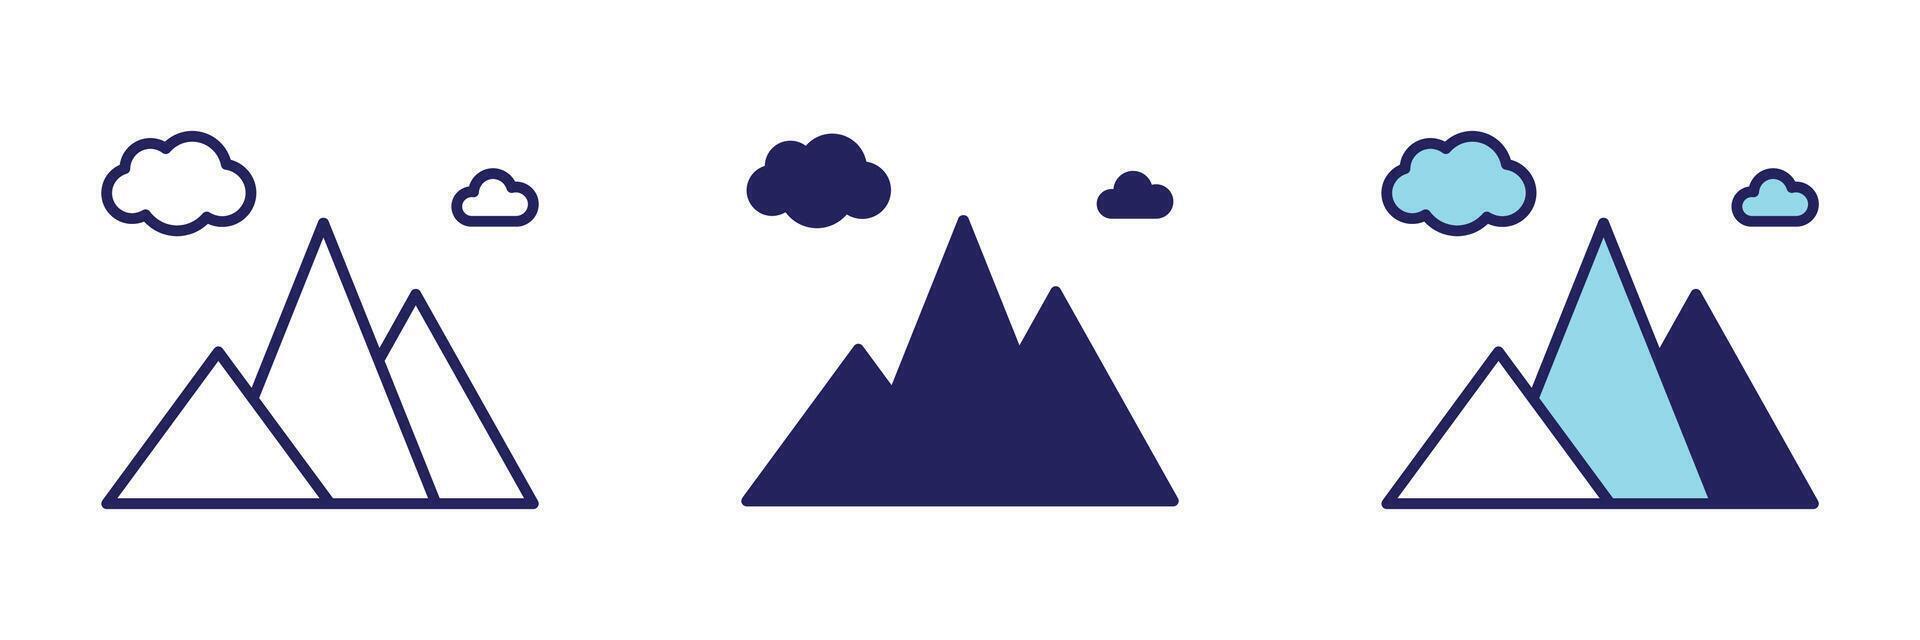 bergen ikon - navigering uppsättning vektor